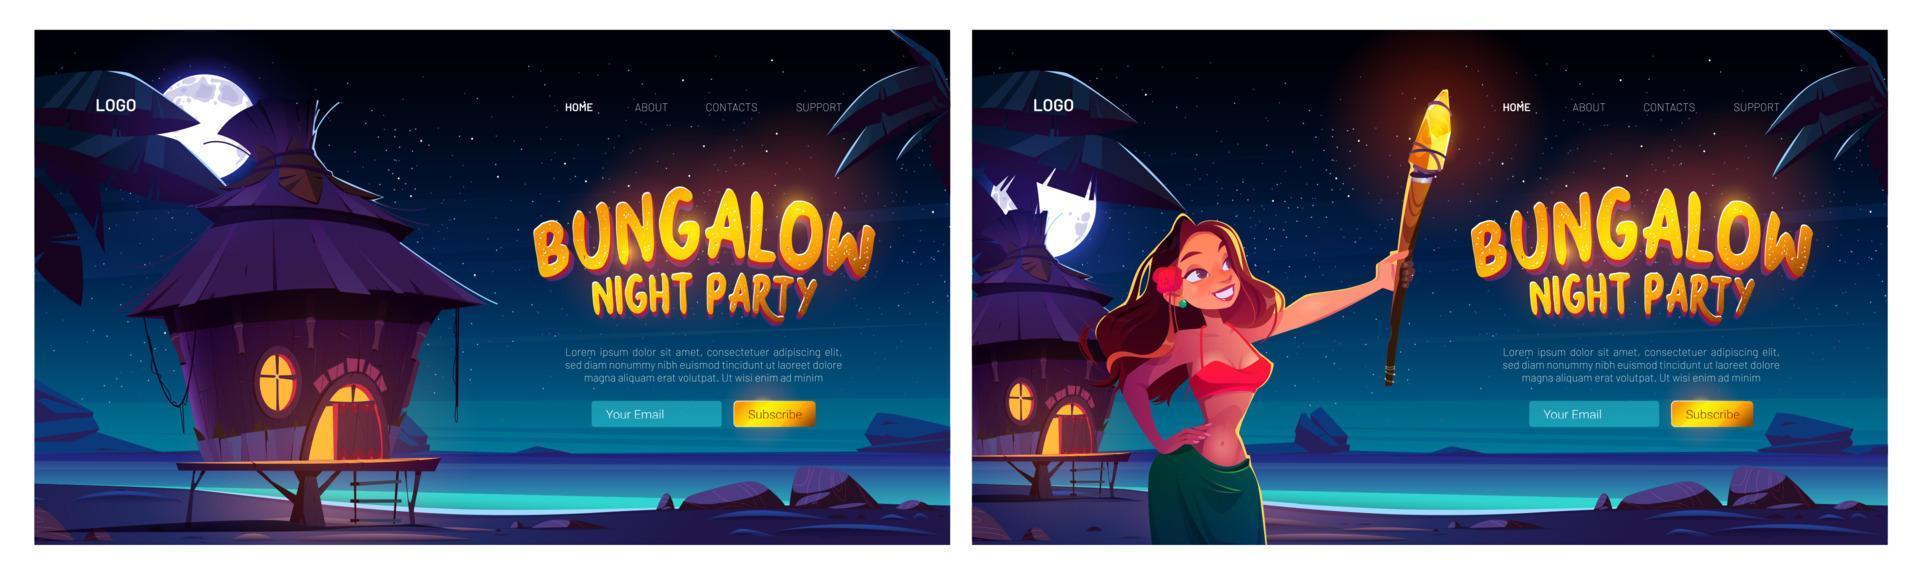 sitio web de fiesta de noche de bungalow con mujer y mar vector